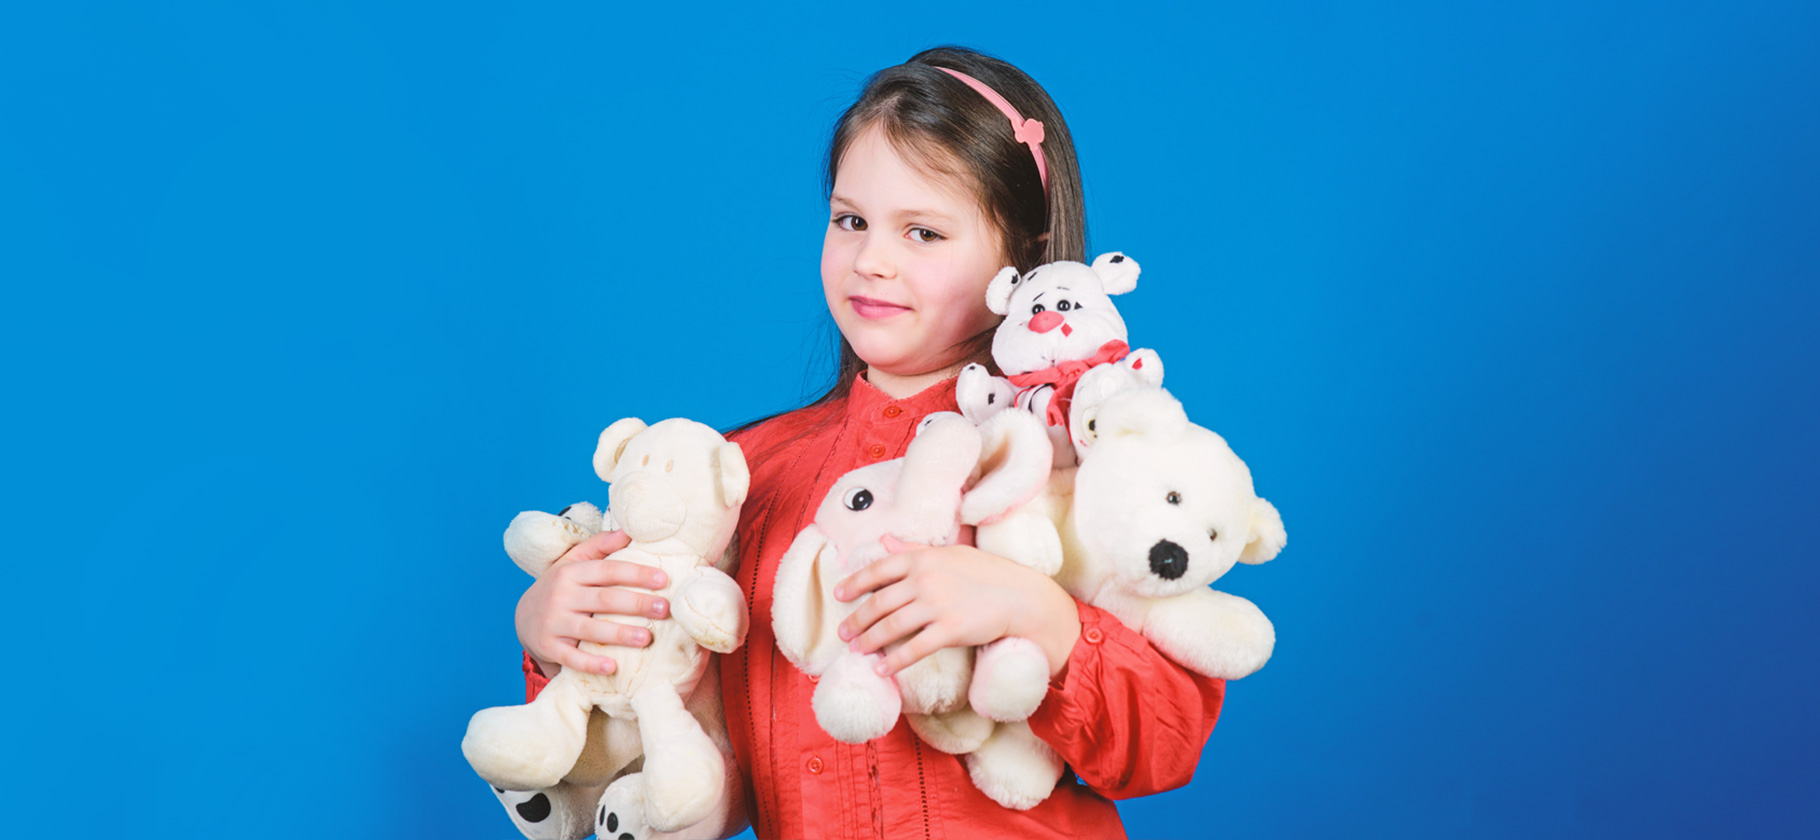 5 признаков безопасной детской игрушки